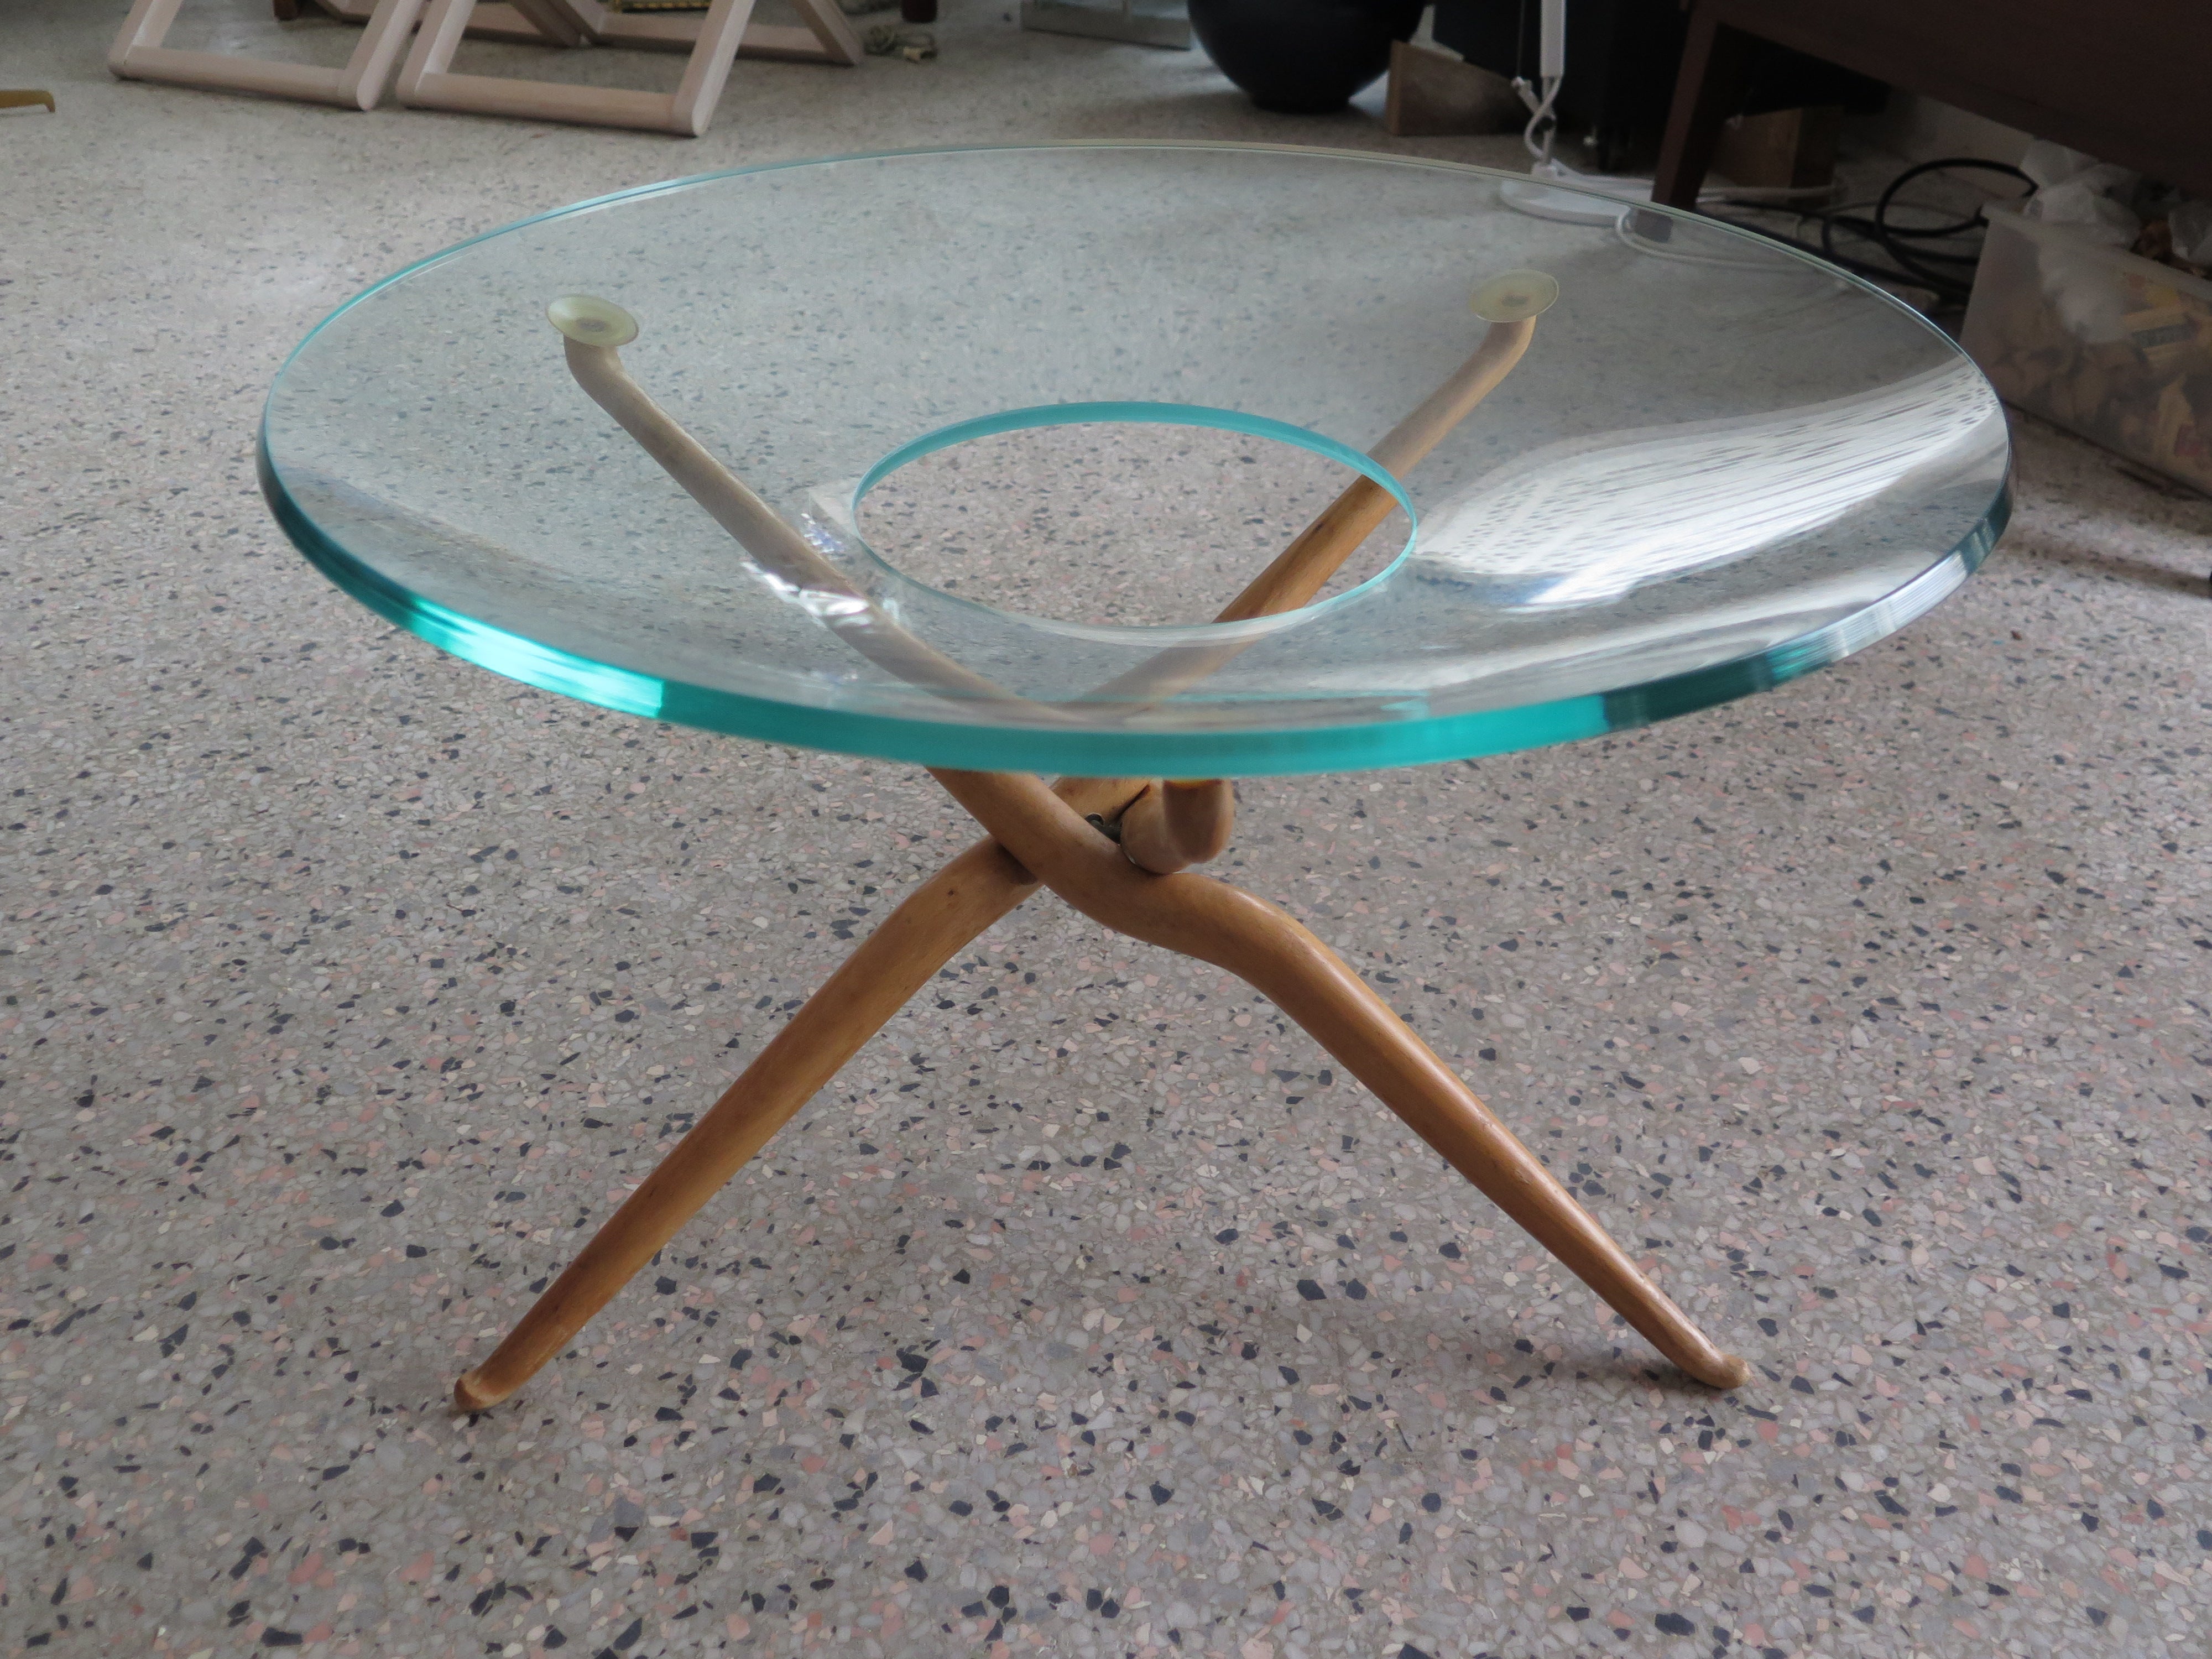 Insolite table moderne organique italienne avec un plateau en verre découpé. Les pattes se plient, le verre est épais avec une teinte verte.